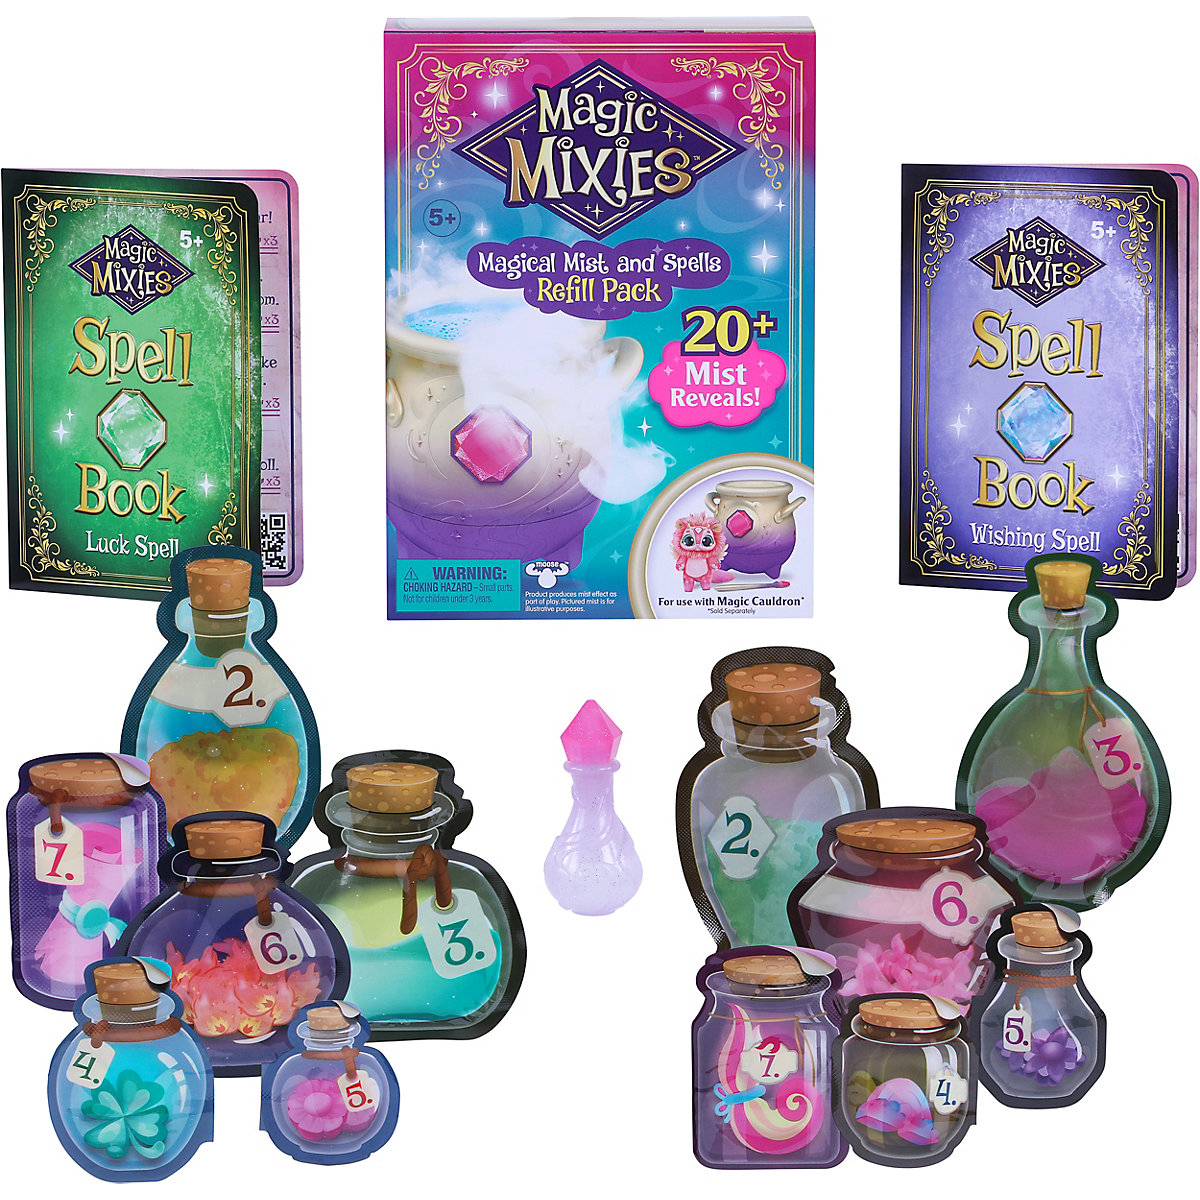 Magic Mixies Nachfüllpackung für Magic Mixies Zauberkessel